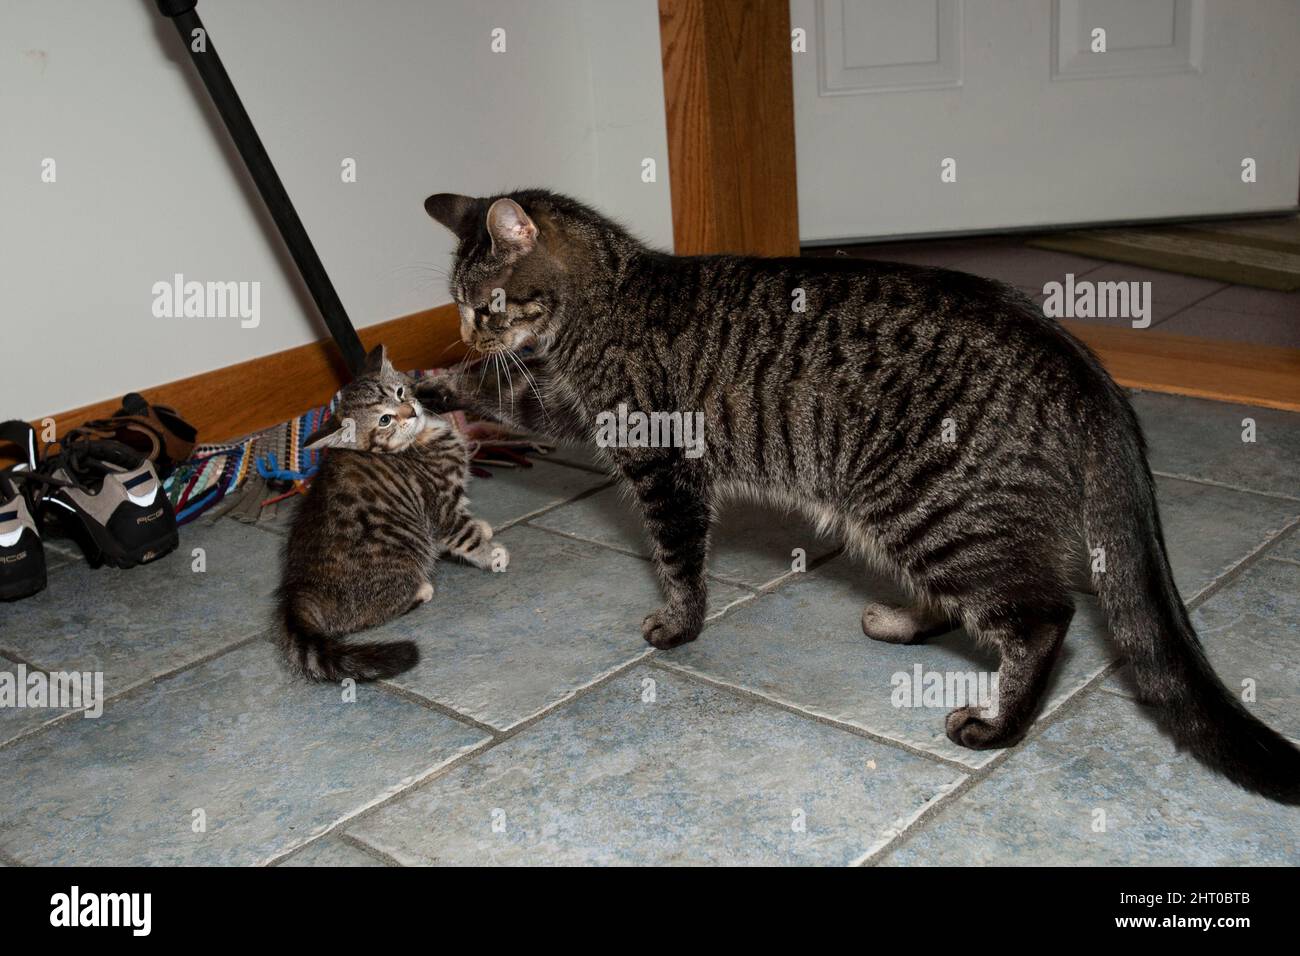 Gato doméstico (Felis catus), jugando con su gatito. Centro de Pennsylvania, EE.UU Foto de stock